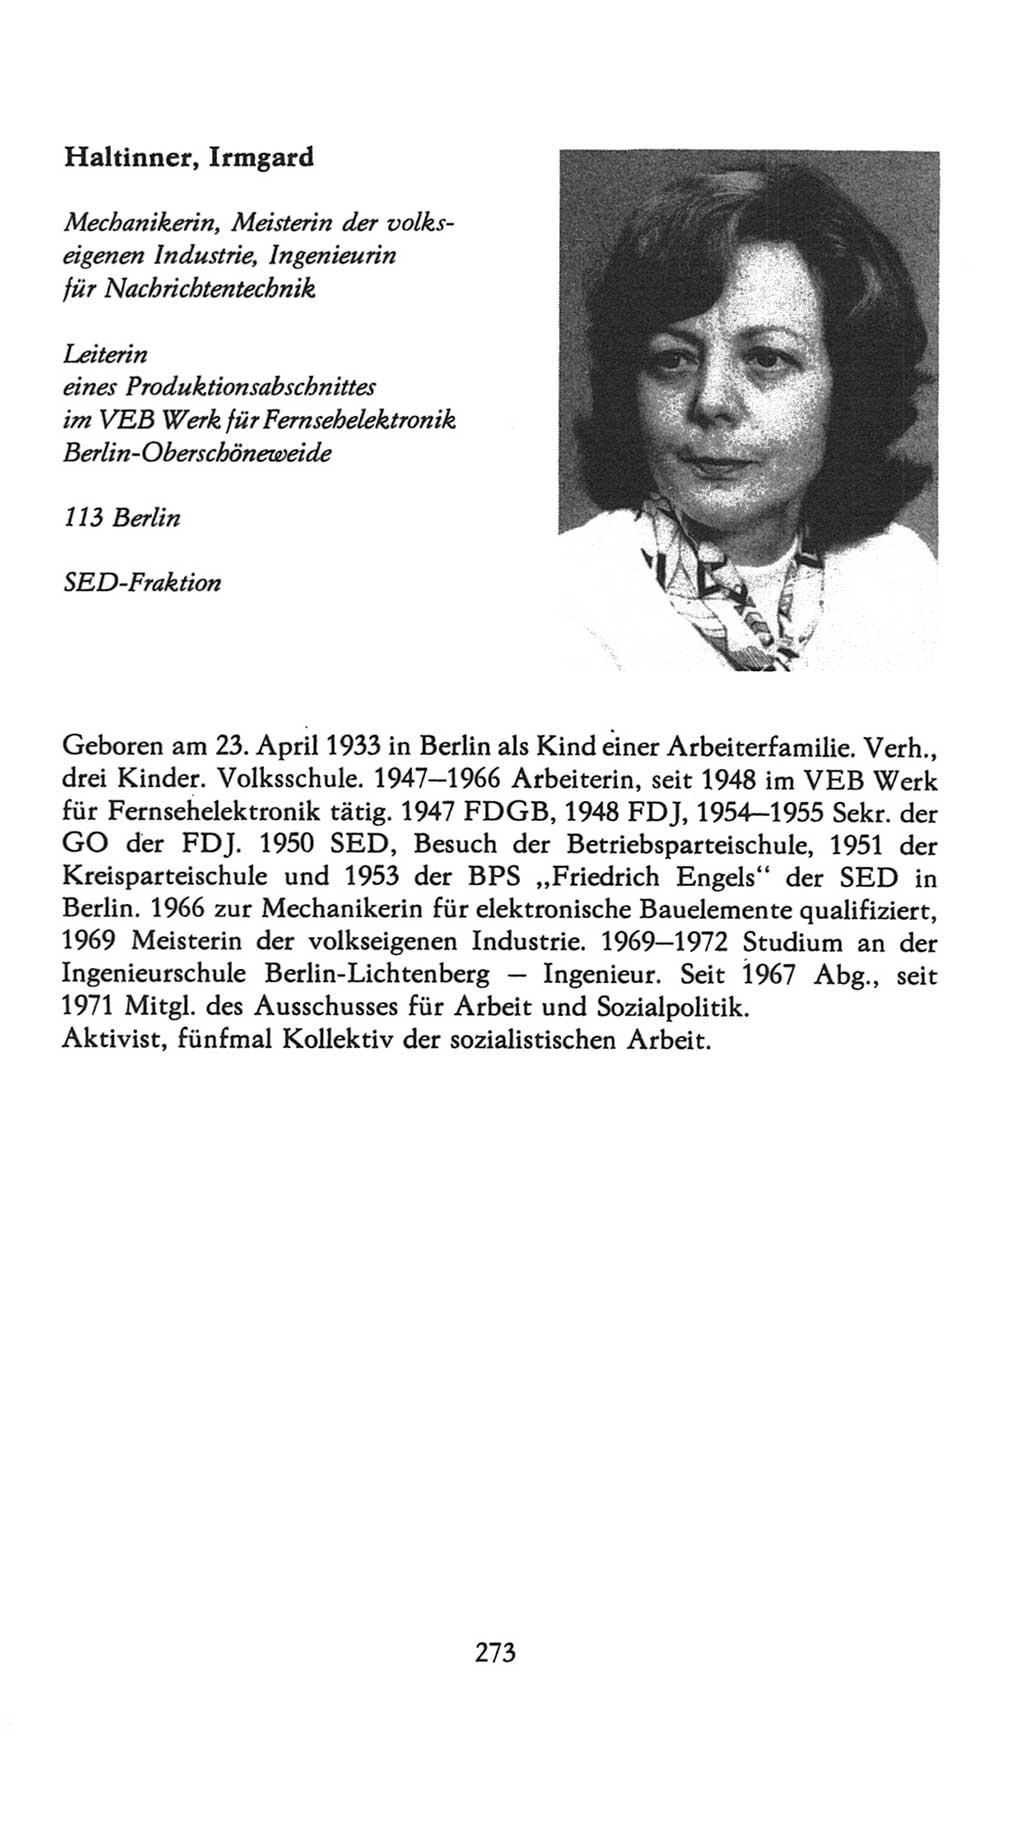 Volkskammer (VK) der Deutschen Demokratischen Republik (DDR), 7. Wahlperiode 1976-1981, Seite 273 (VK. DDR 7. WP. 1976-1981, S. 273)